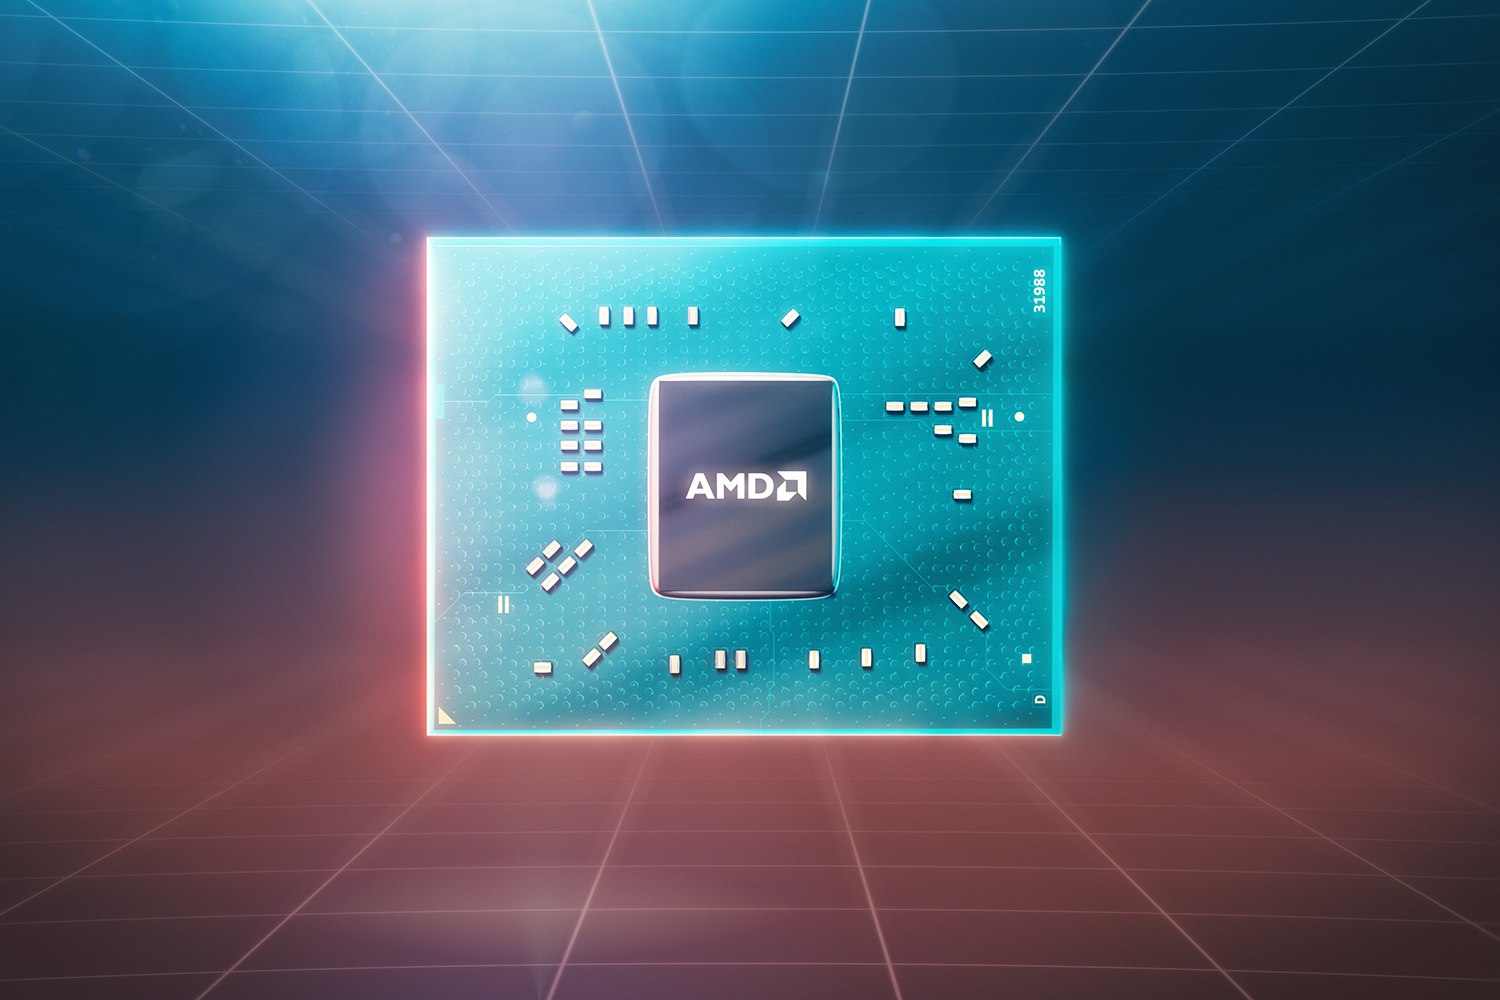 AMD 7th Generation